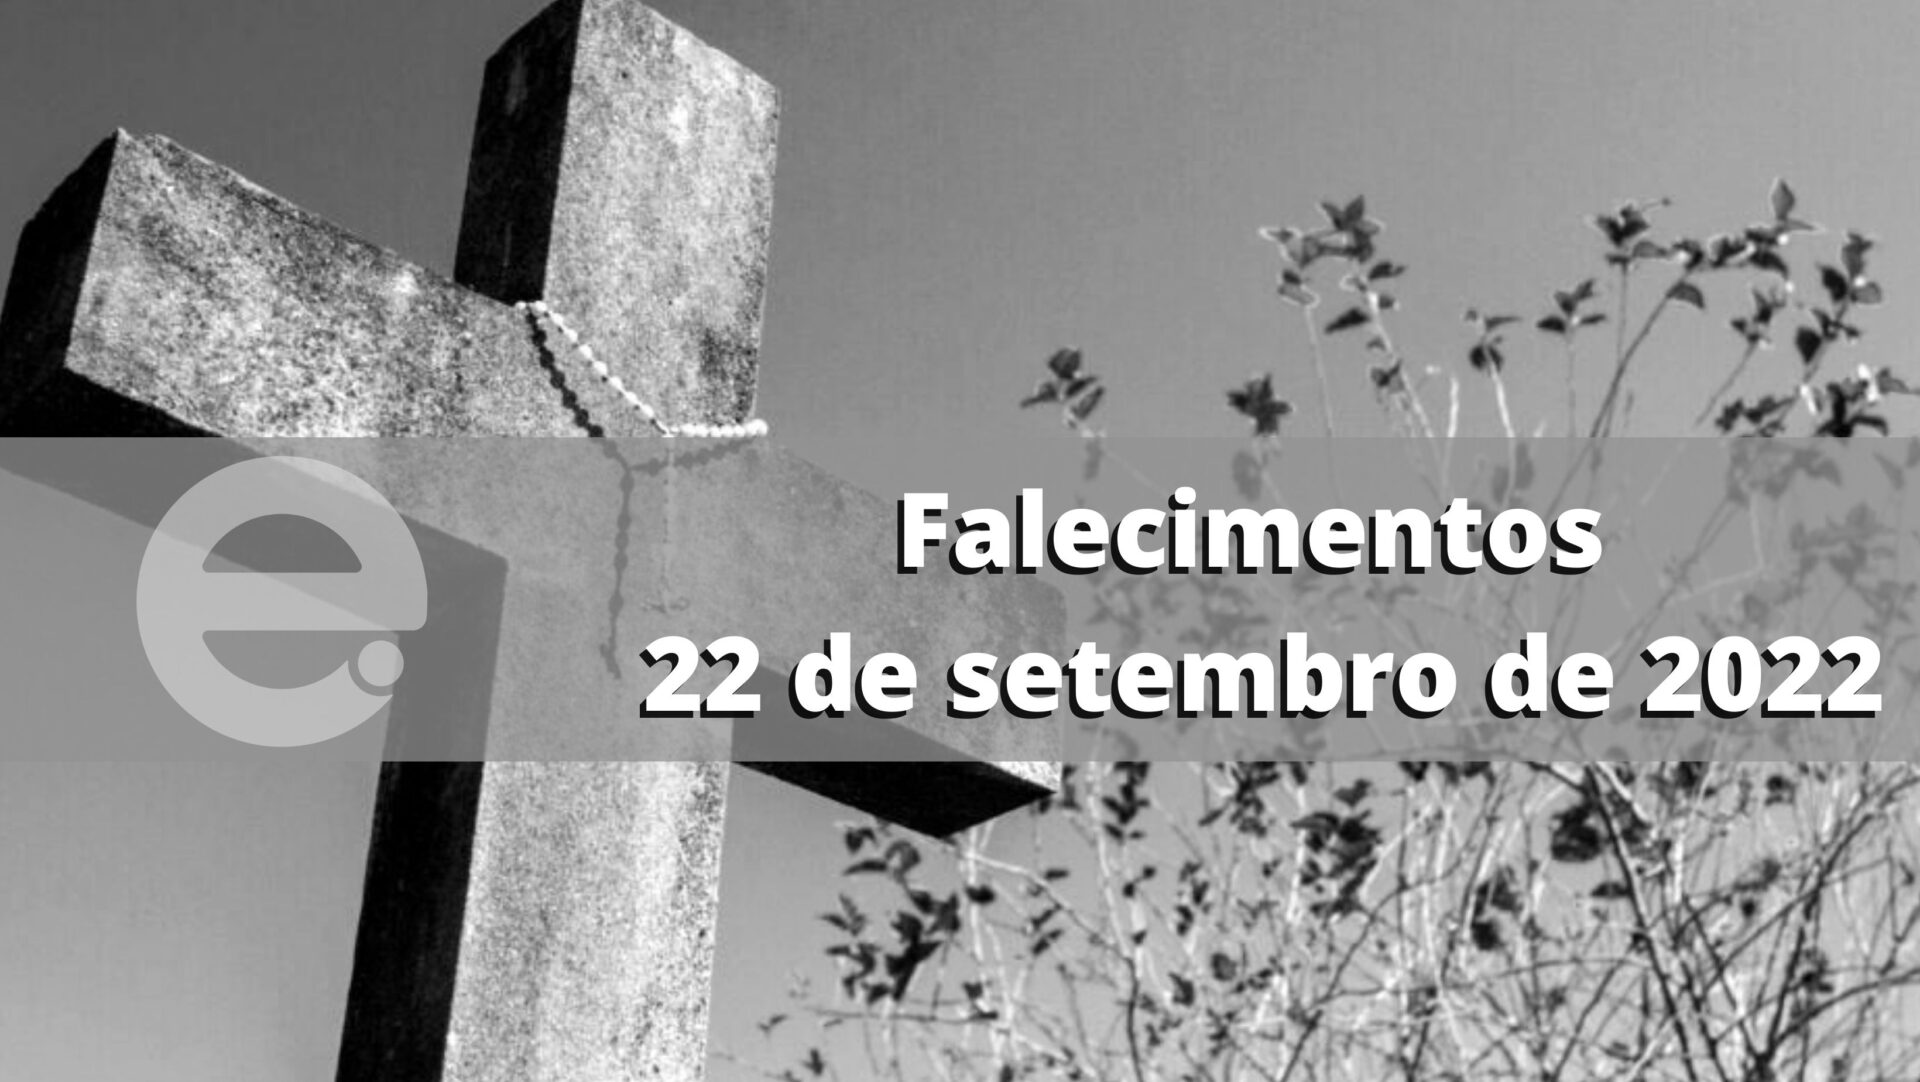 Confira os falecimentos desta quinta-feira, 22 de setembro de 2022, em Limeira